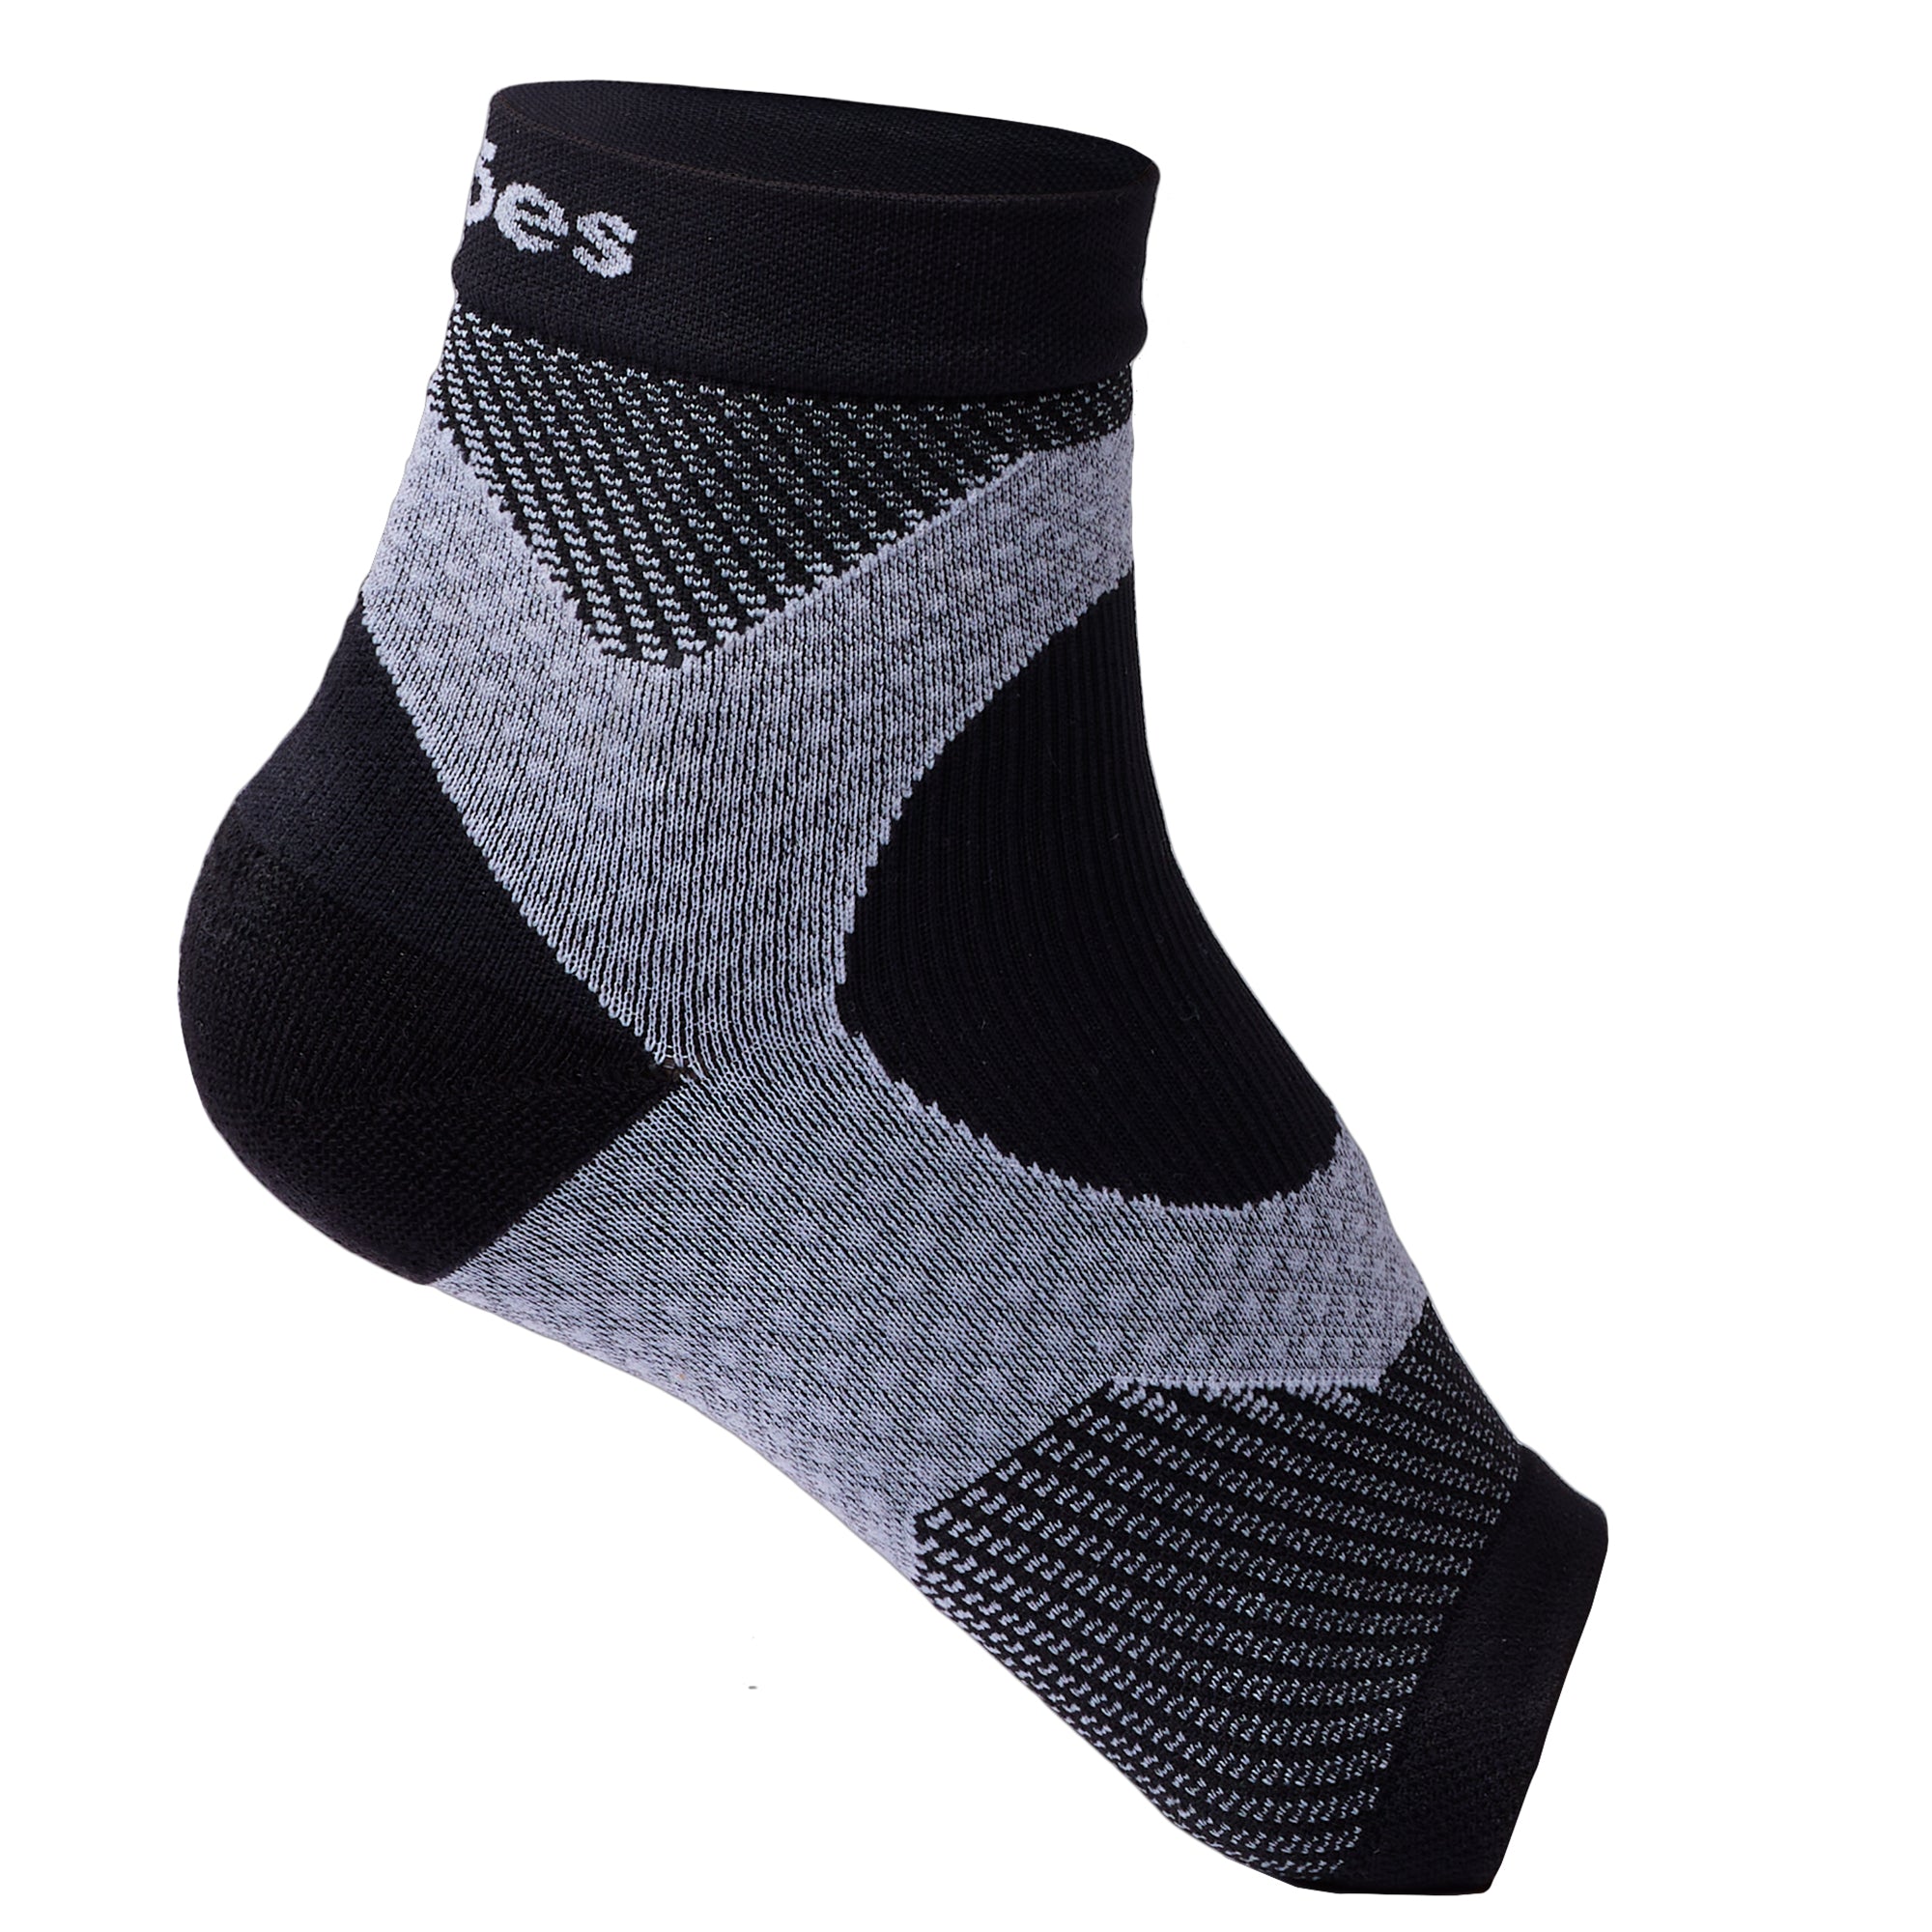 1pair Gray Yoga Socks For Women Short Length Soft Professional